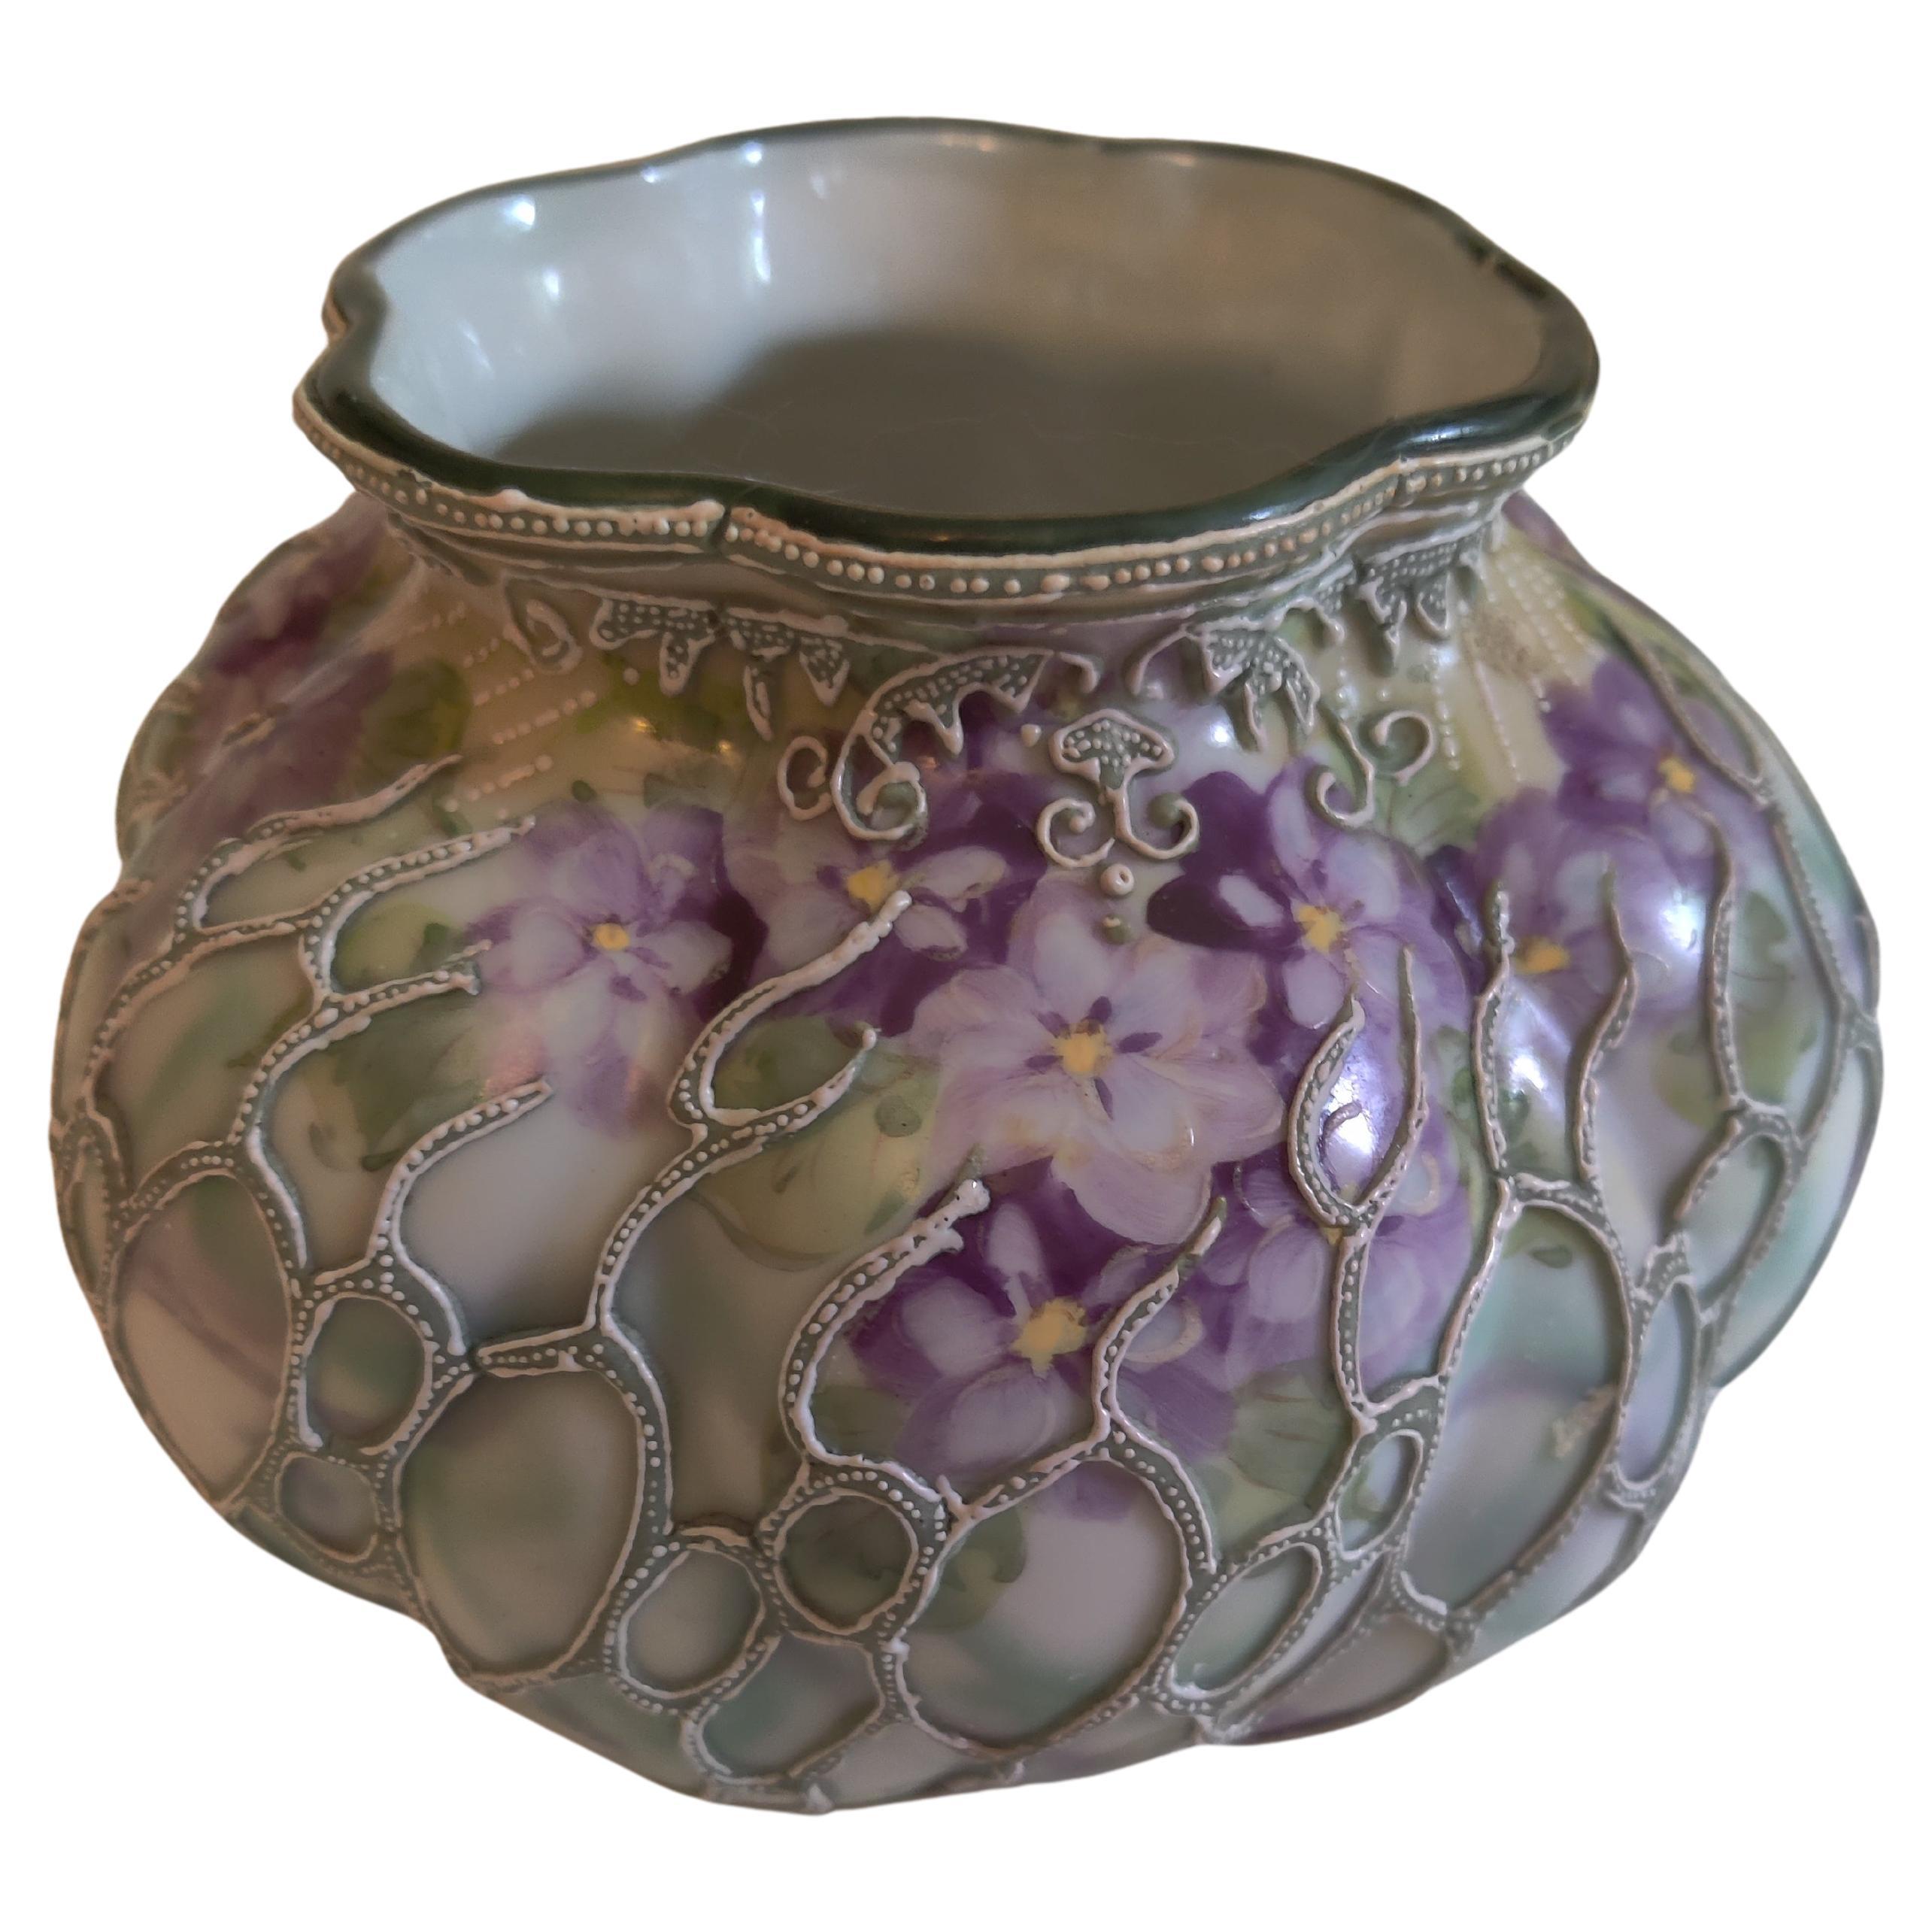 Nippon Oriental Raised Moriage Emaille Porzellanschale / Vase mit Veilchen.